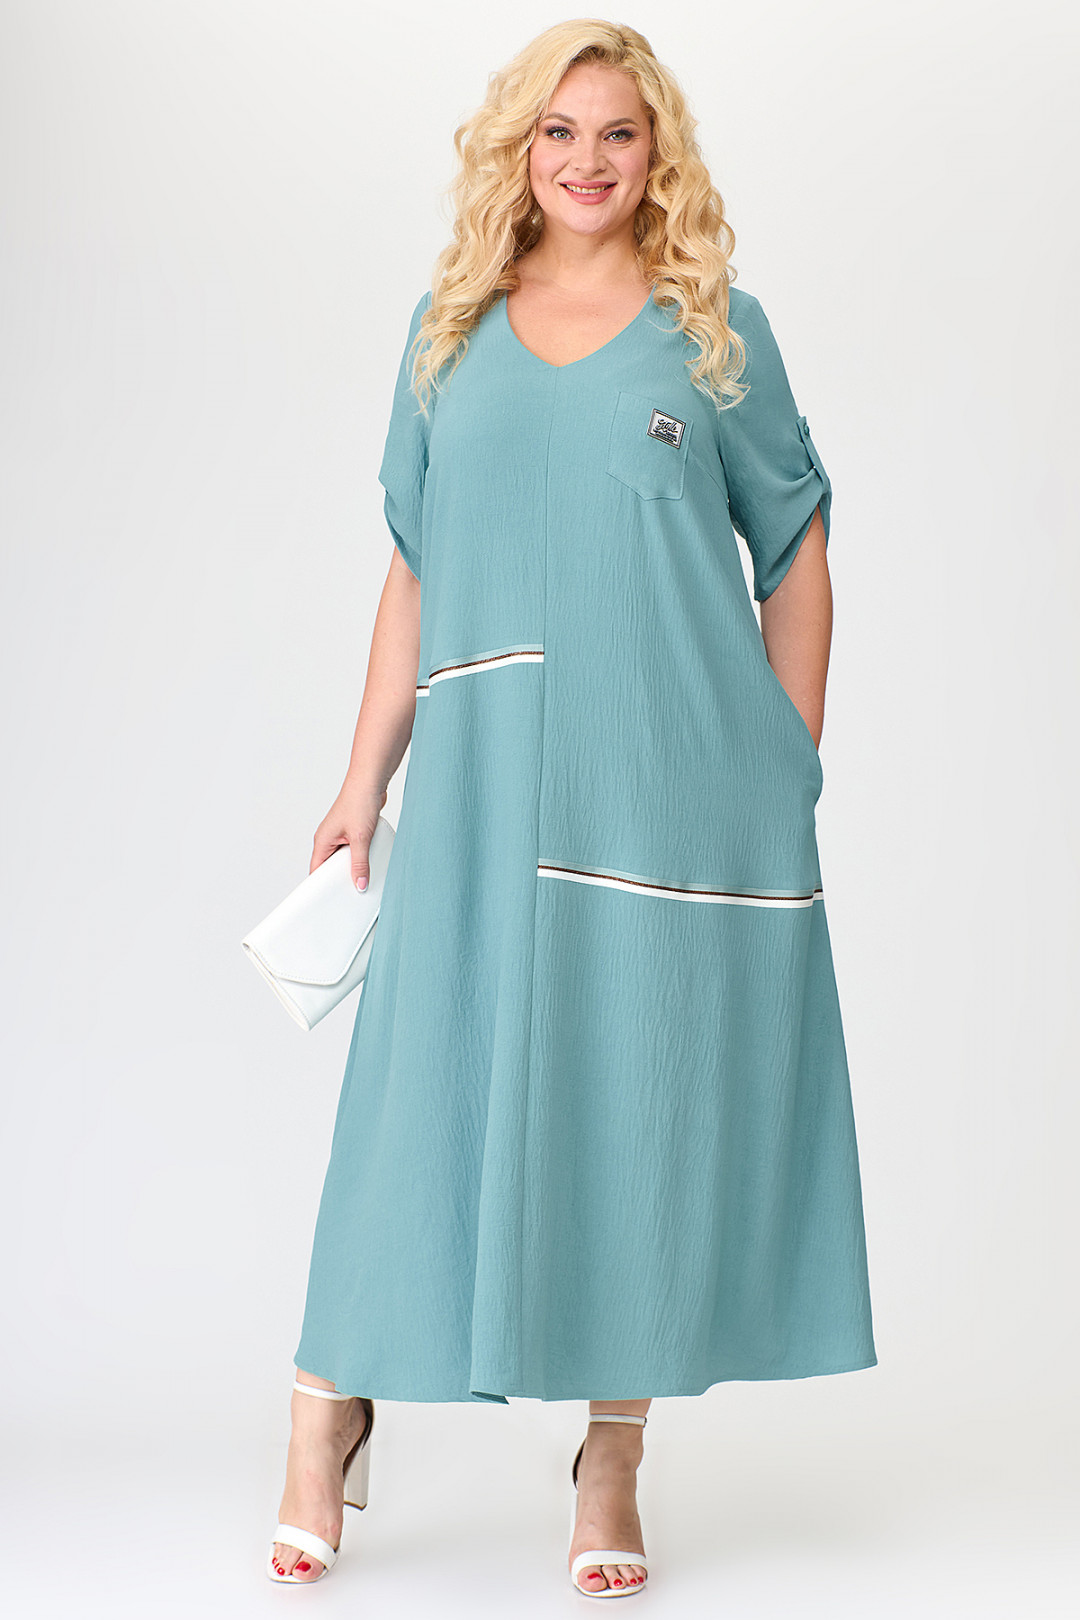 Платье ALGRANDA (Новелла Шарм) A3686-6-С